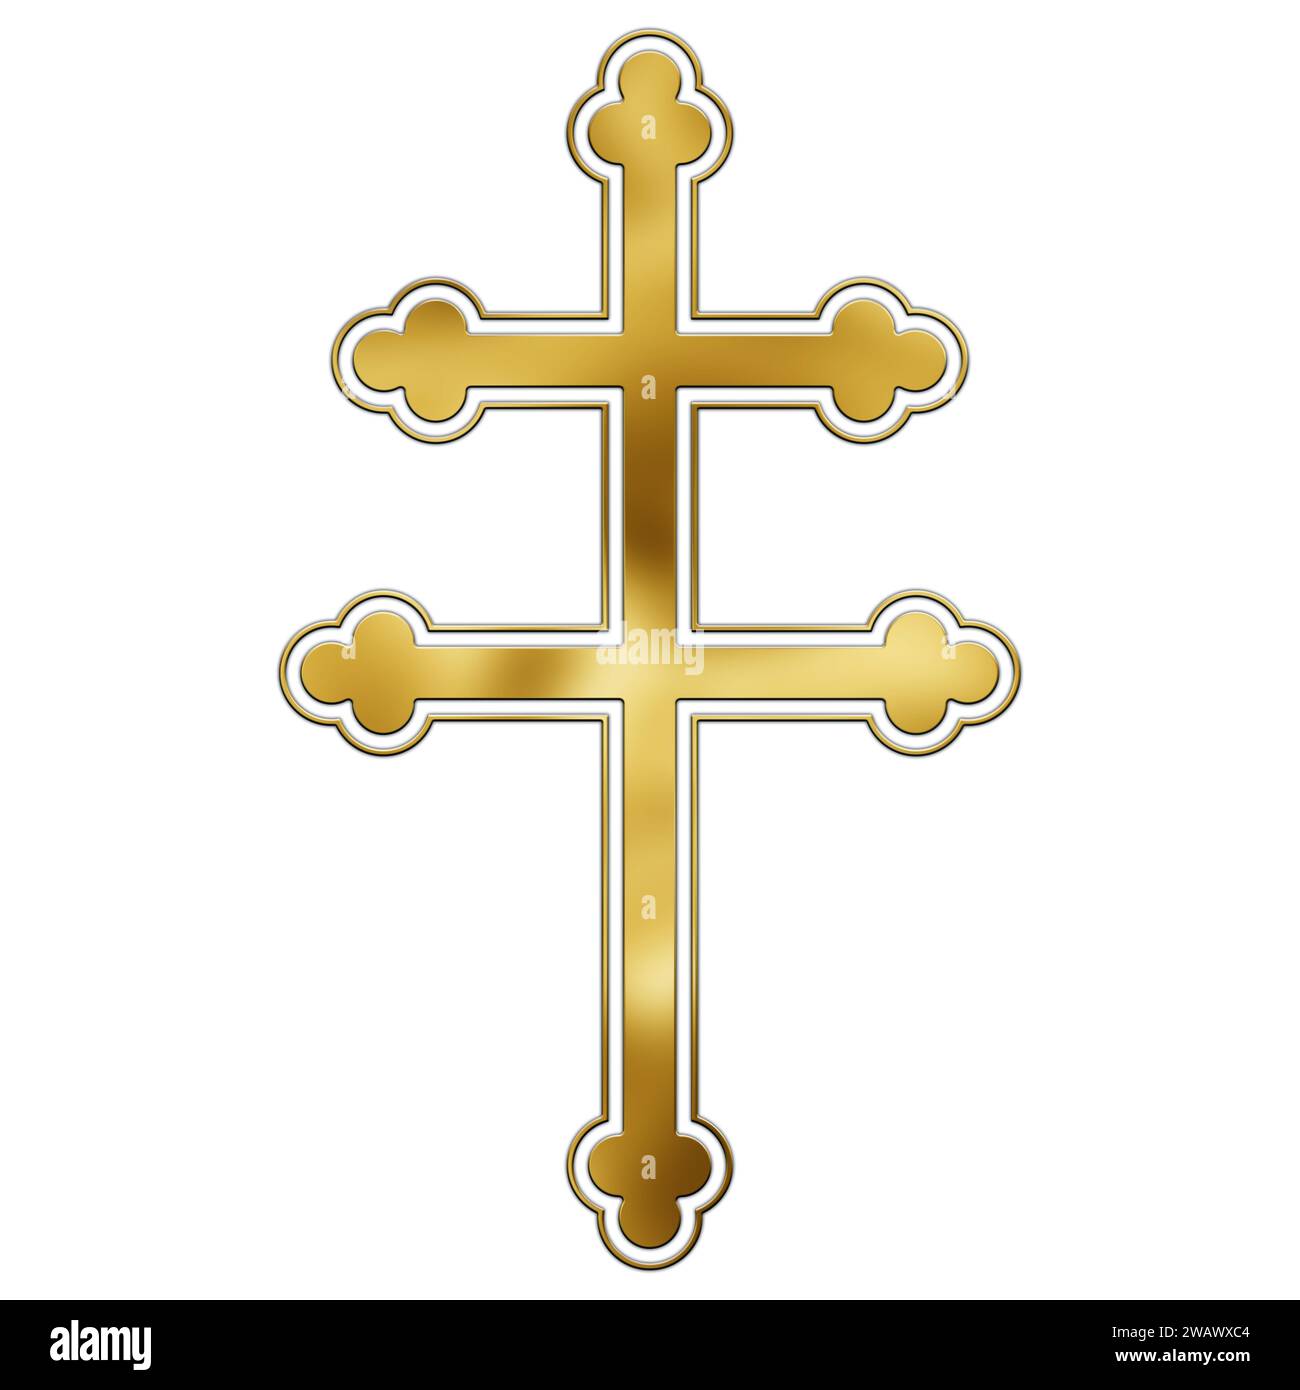 Croce di Lorena, illustrazione artistica dal tono dorato Foto Stock